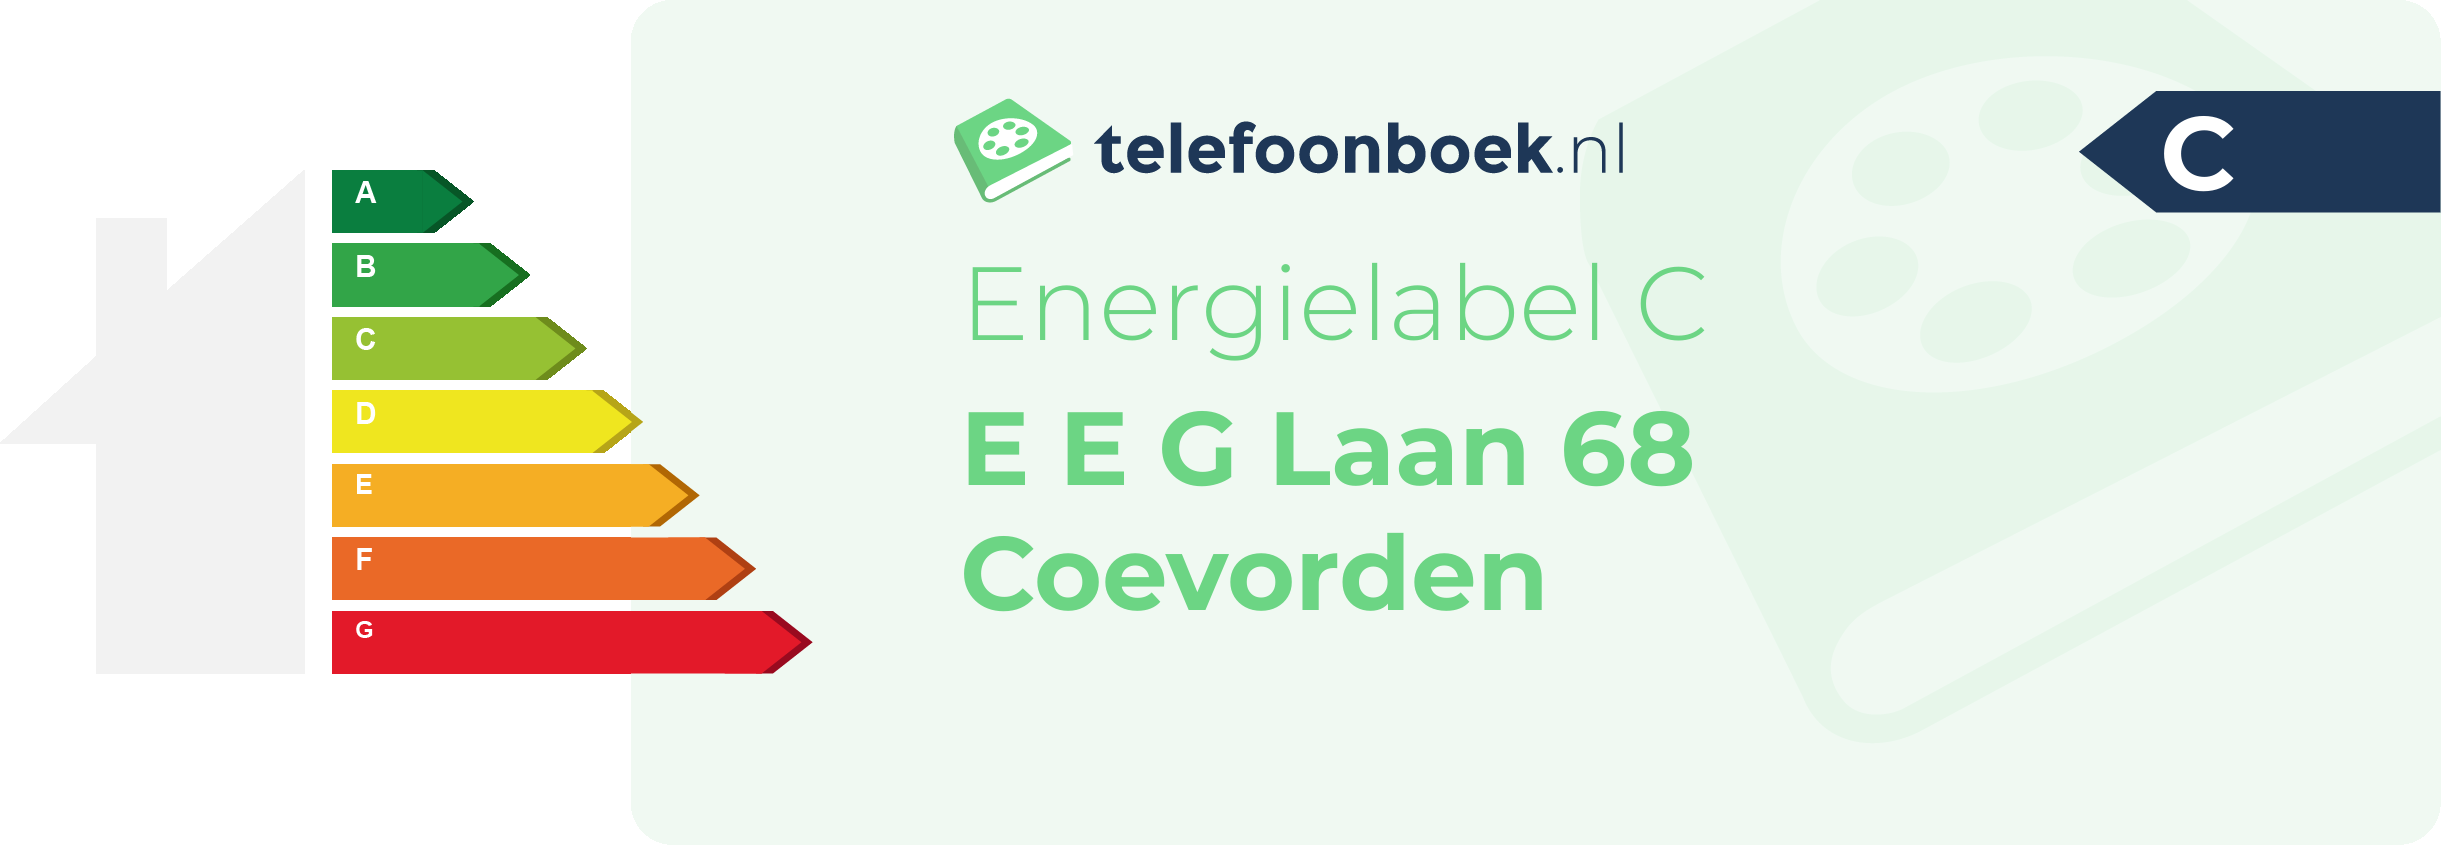 Energielabel E E G Laan 68 Coevorden